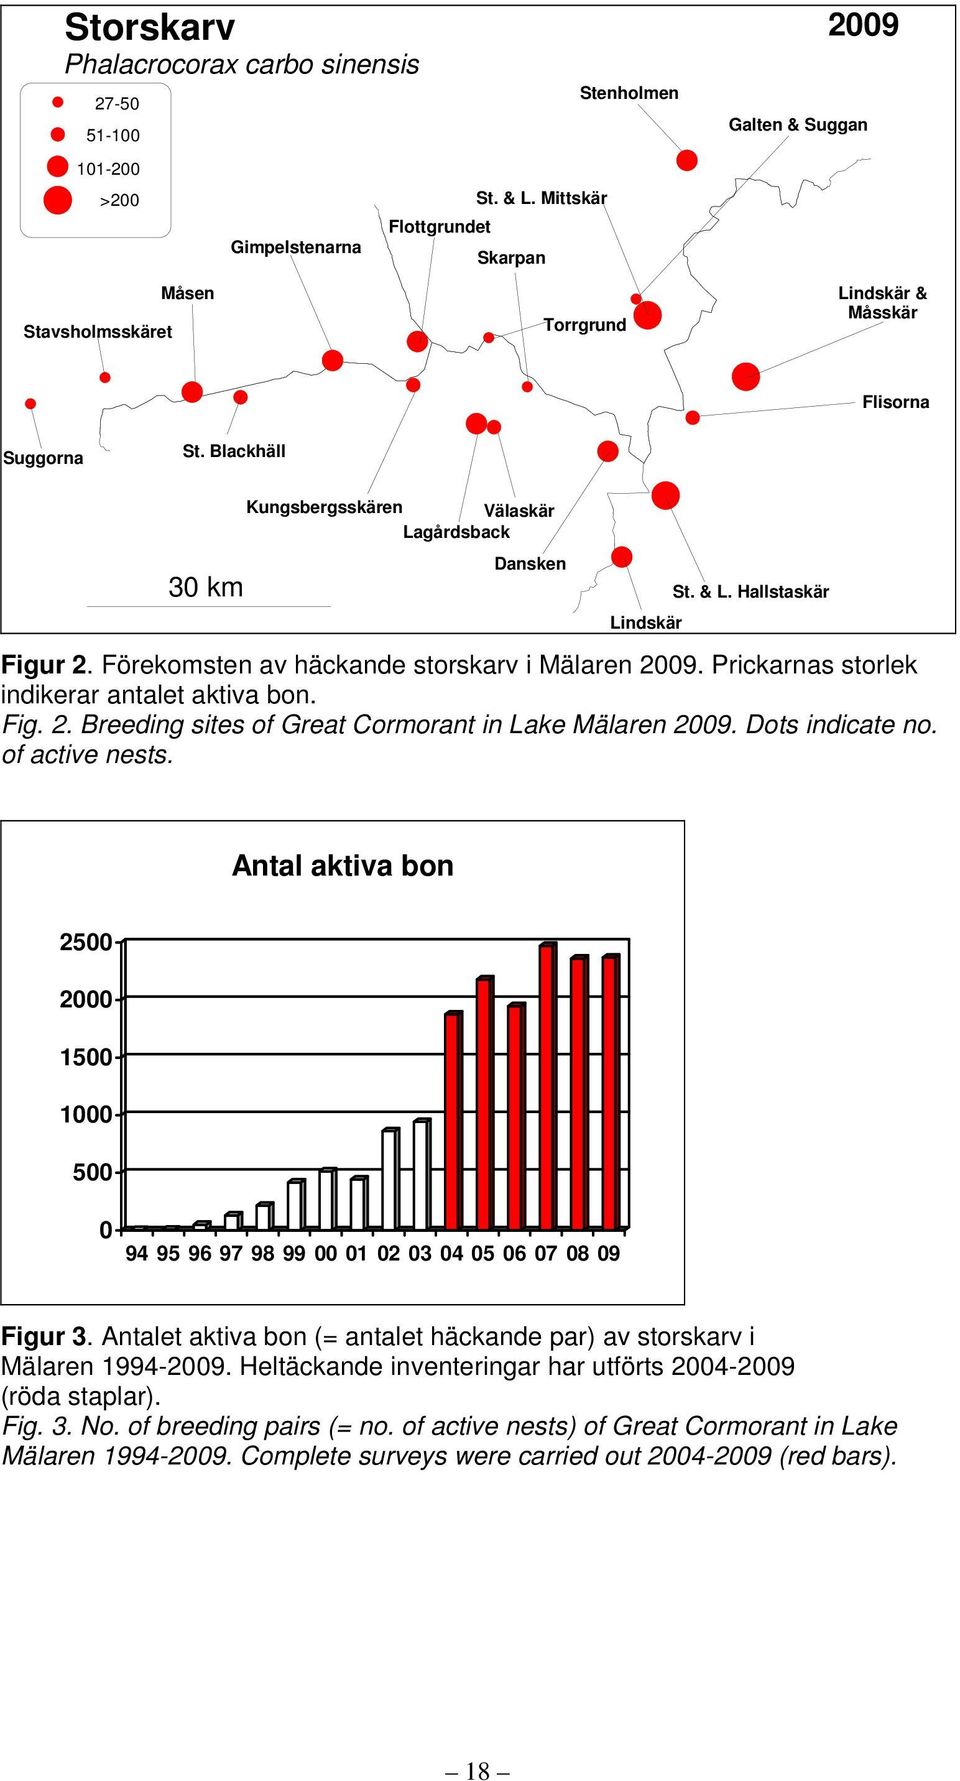 Förekomsten av häckande storskarv i Mälaren 2009. Prickarnas storlek indikerar antalet aktiva bon. Fig. 2. Breeding sites of Great Cormorant in Lake Mälaren 2009. Dots indicate no. of active nests.